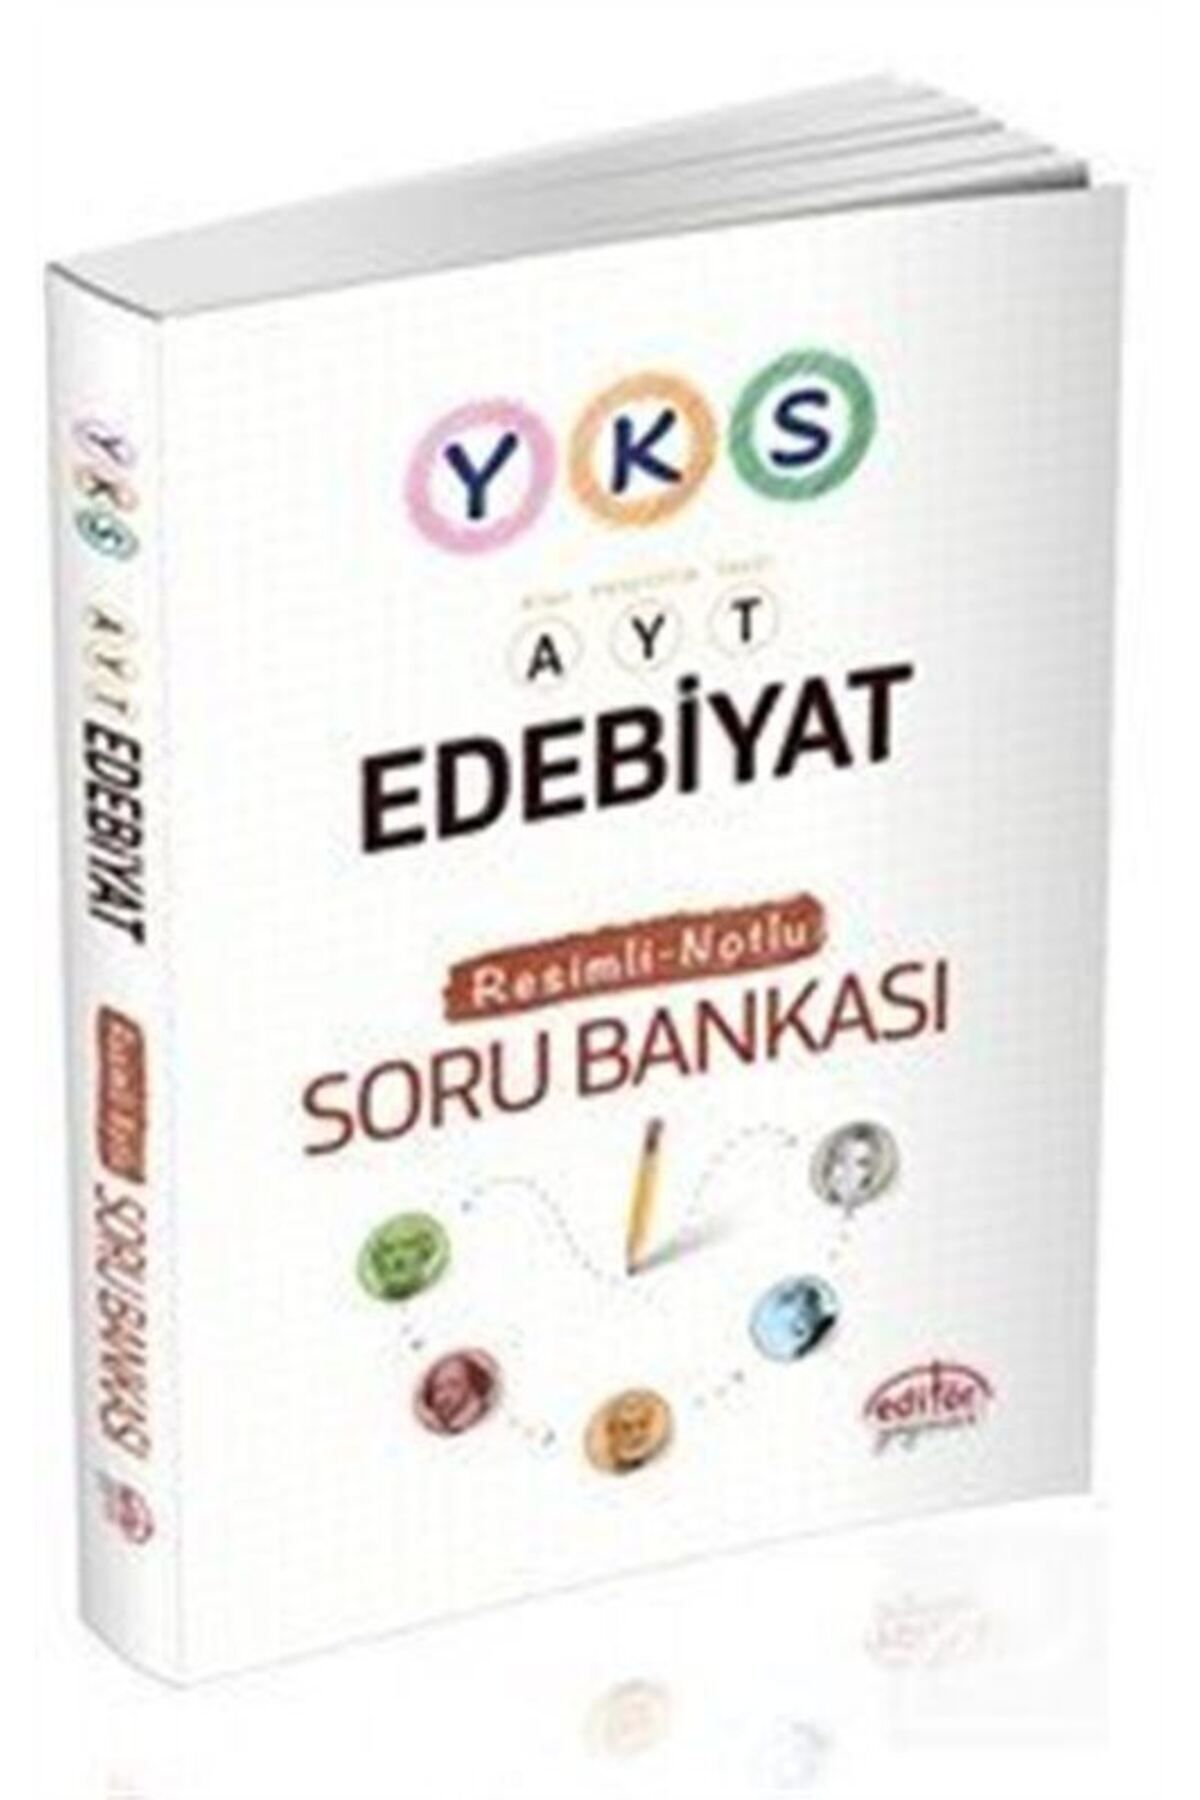 Editör Yayınları Yks Edebiyat Resimli-notlu Soru Bankası